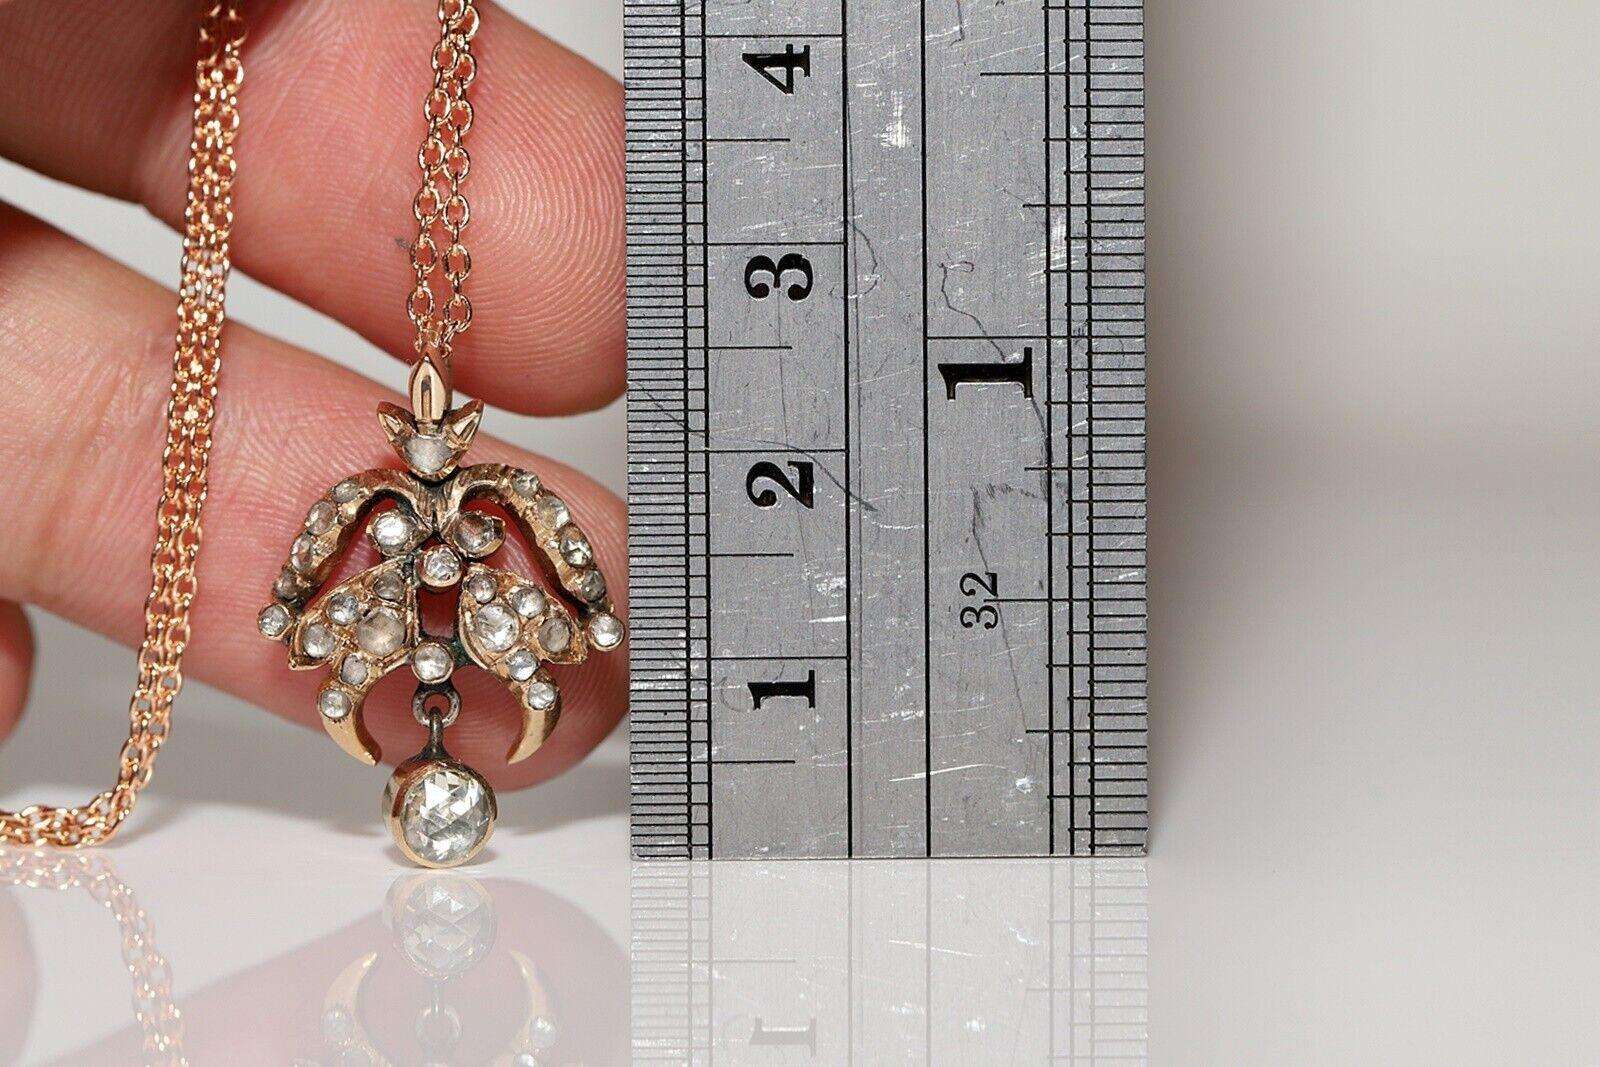 En très bon état.
Le poids total est de 6,6 grammes.
Le diamant est de 0,65 carat.
Le diamant est a  Couleur H-IJ et clarté s1-s2-s3.
La longueur totale de la chaîne est de 50 cm.
N'hésitez pas à nous contacter pour toute question.